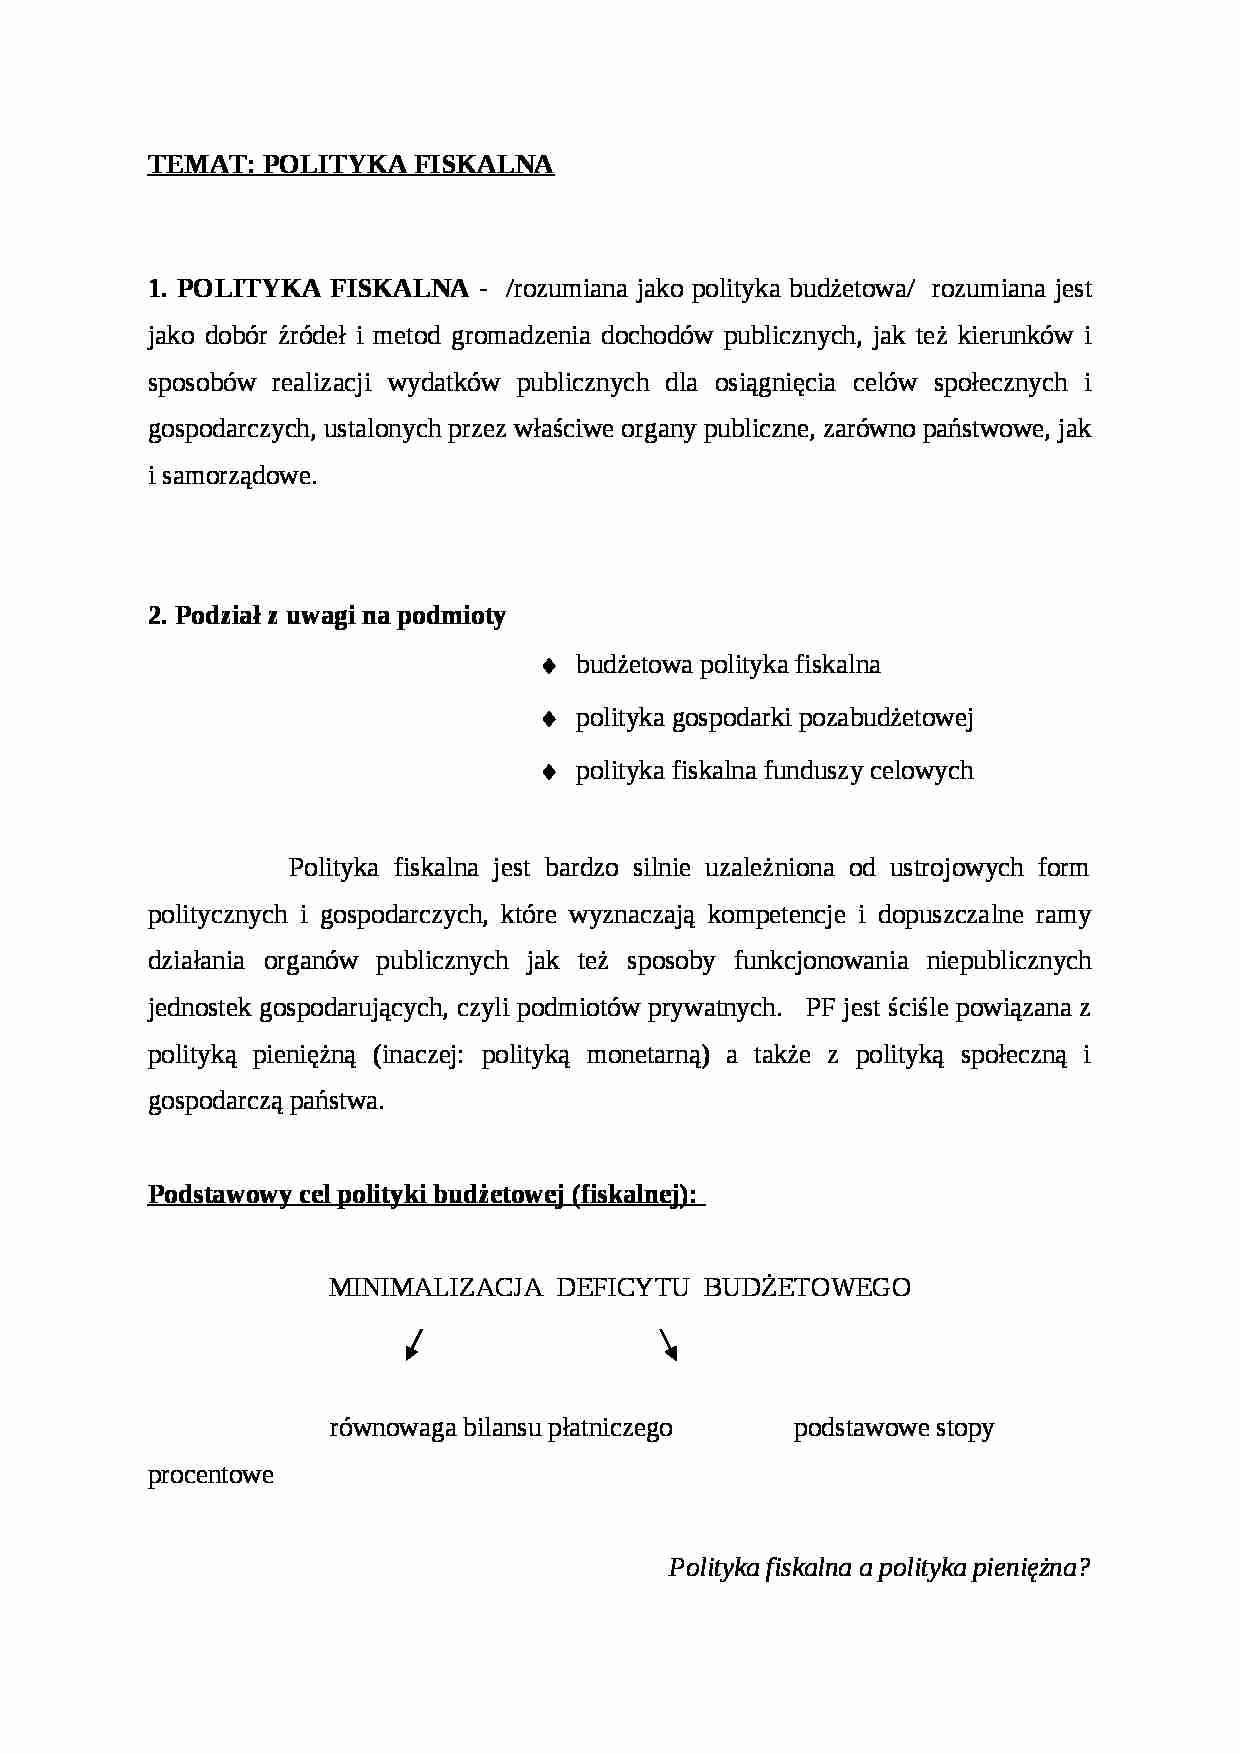 POLITYKA FISKALNA - Automatyczne Stabilizatory Koniunktury - strona 1